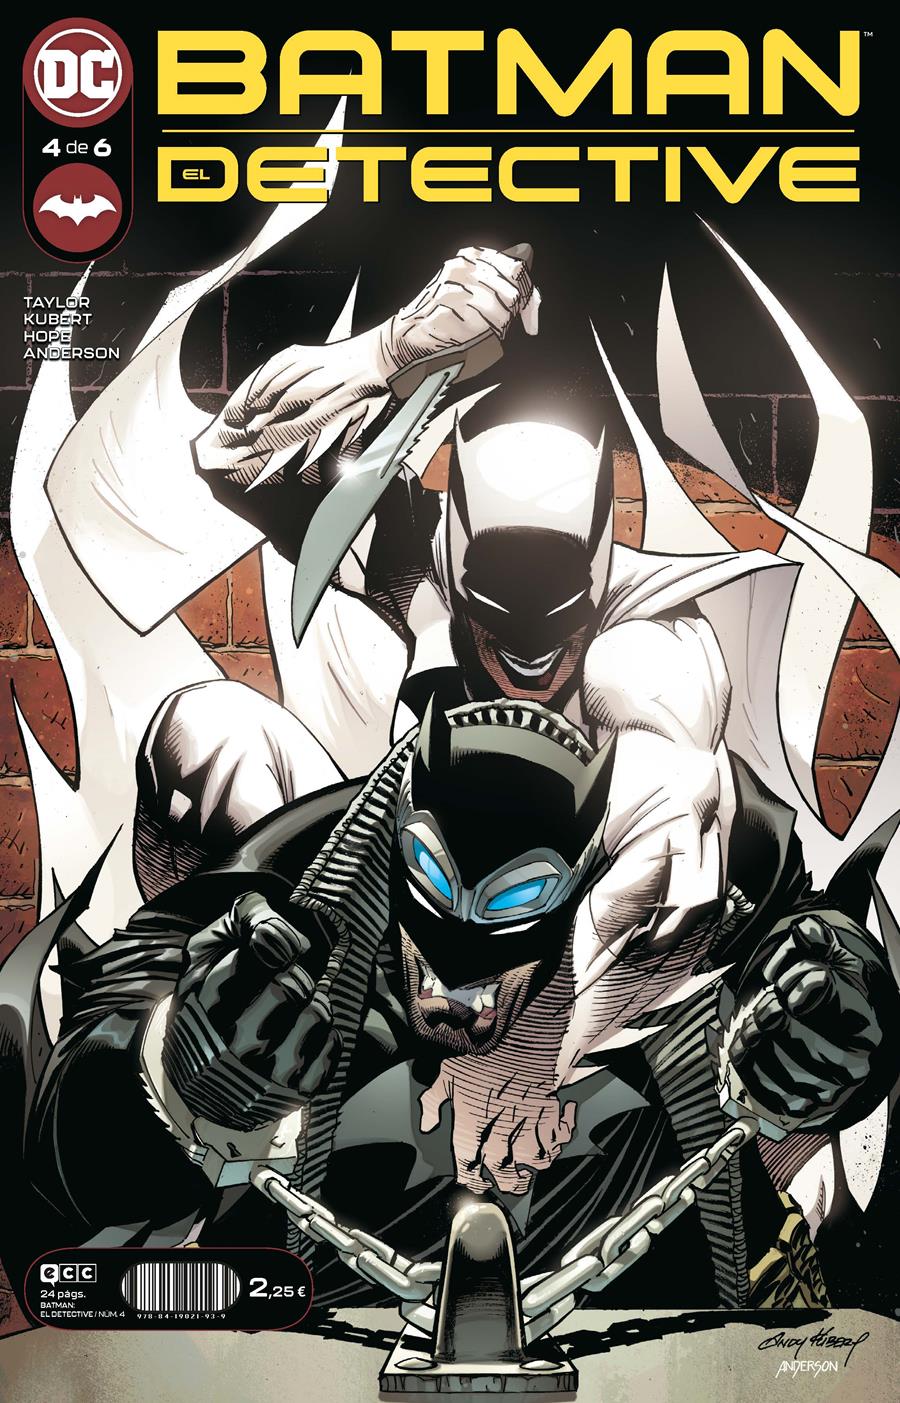 Batman: Detective núm. 4 de 6 | N0222-ECC05 | Andy Kubert / Tom Taylor | Terra de Còmic - Tu tienda de cómics online especializada en cómics, manga y merchandising